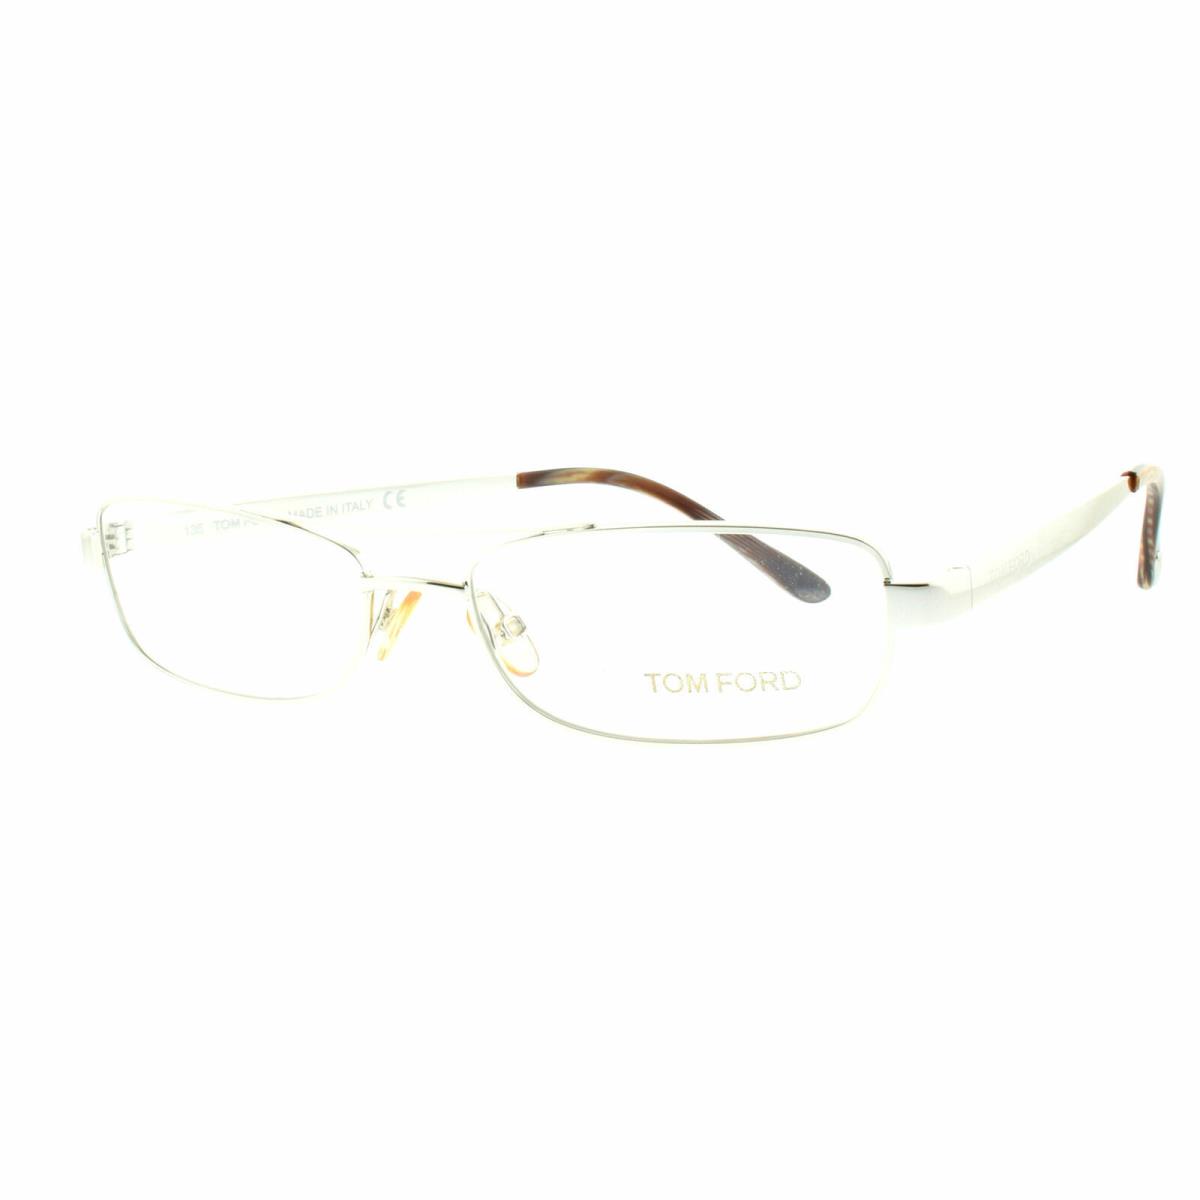 Tom Ford FT5025 753 Silver Rectangular Optical Frames Eyeglasses